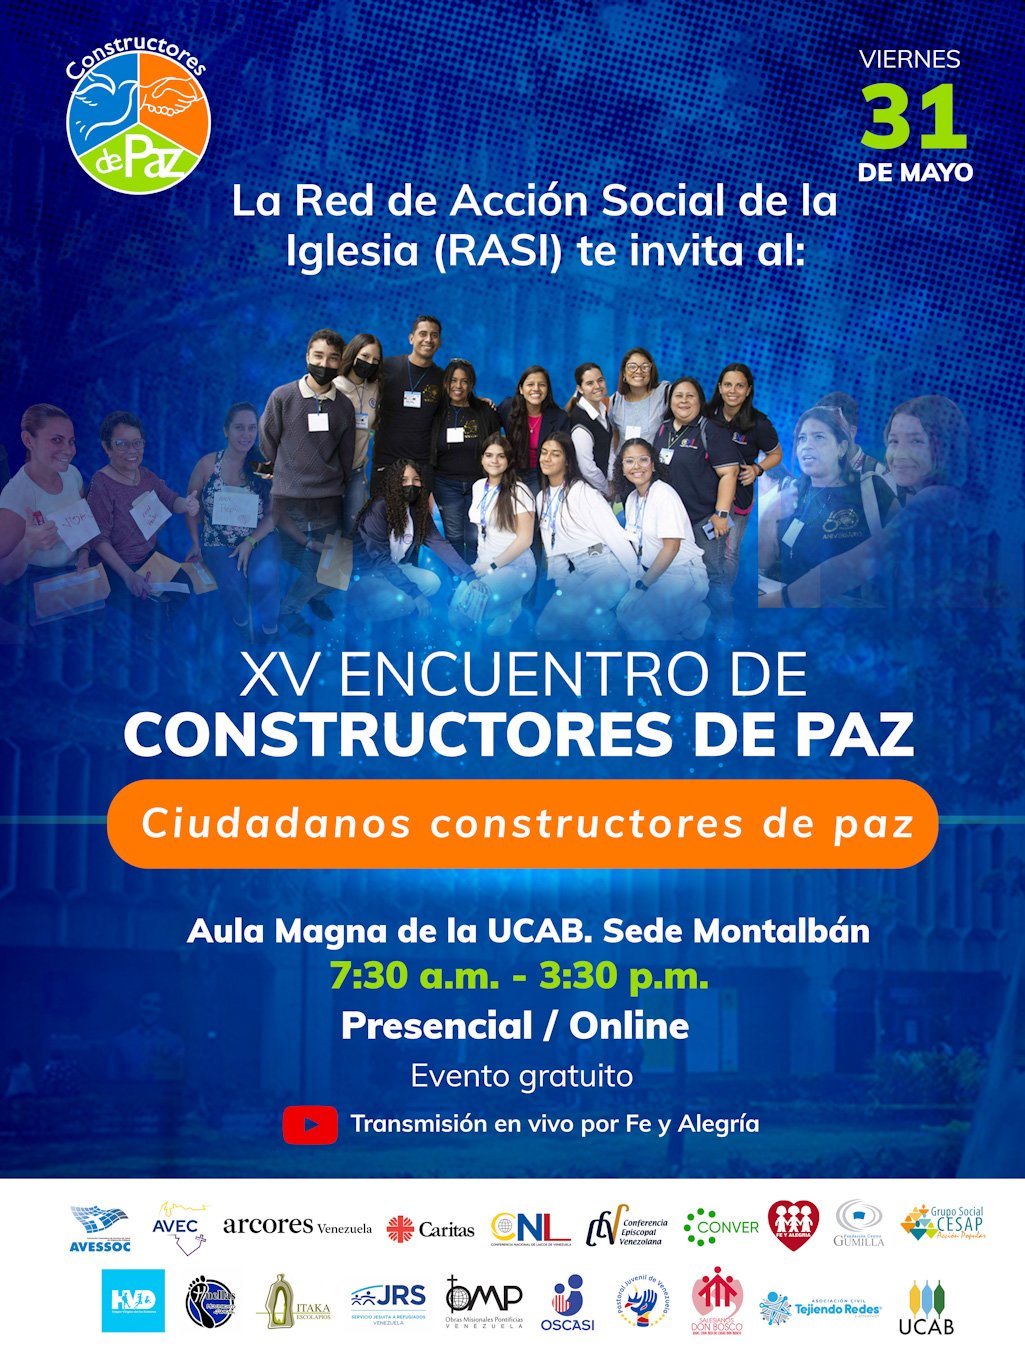 Flyer-Encuentro-Constructores-de-paz (1)_edited